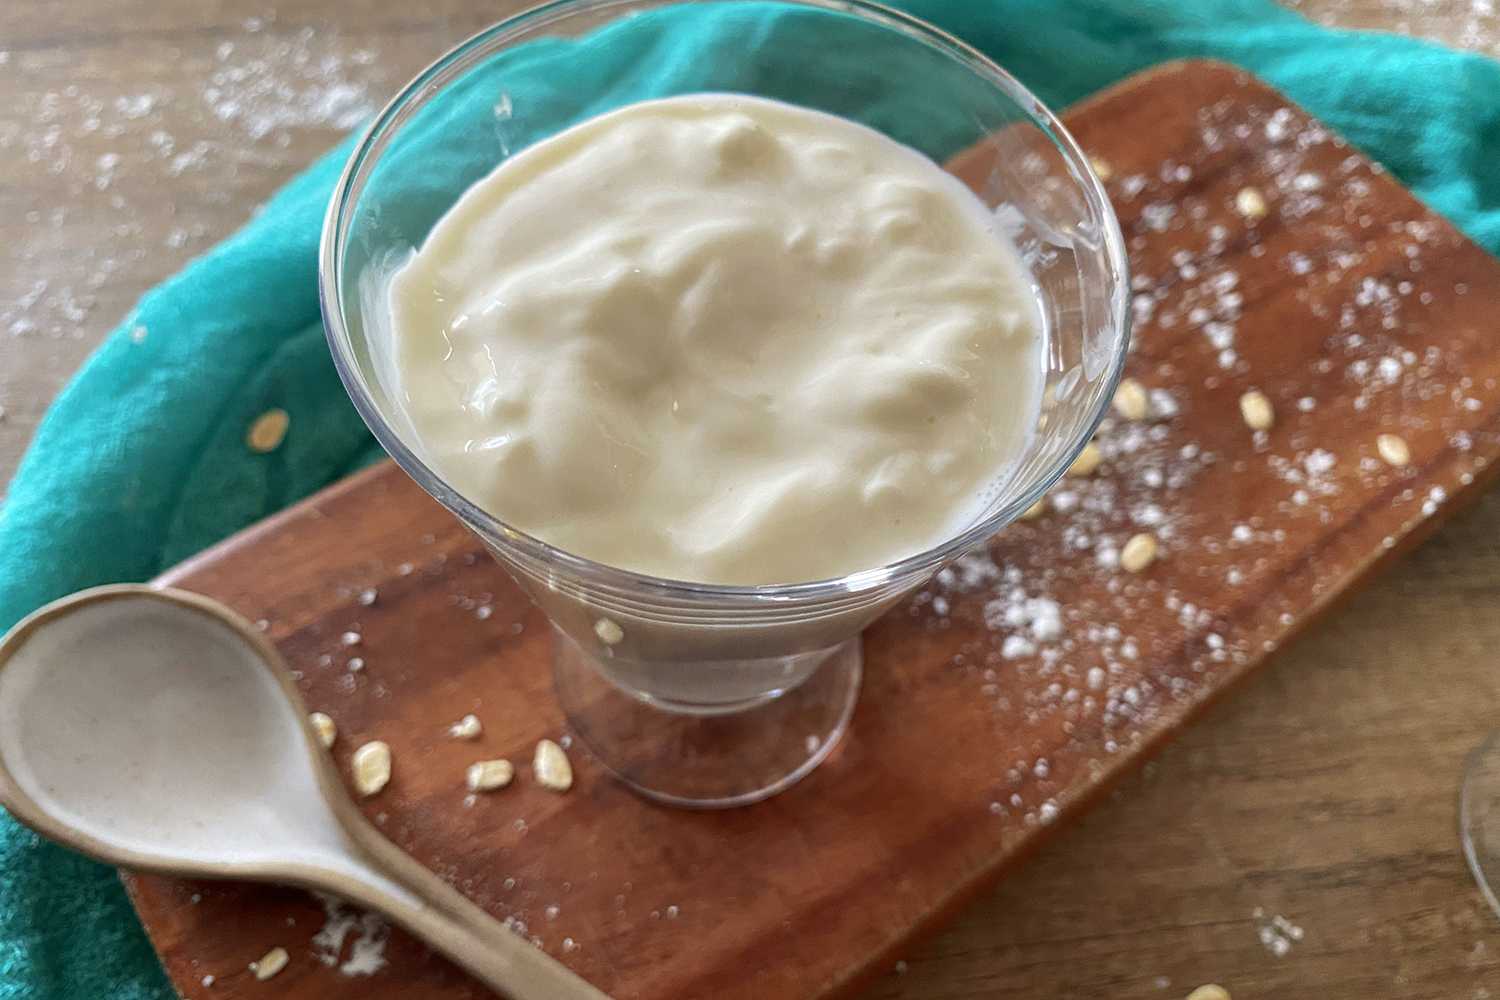 Greek yogurt in glass bowl on cutter board with spoon on side